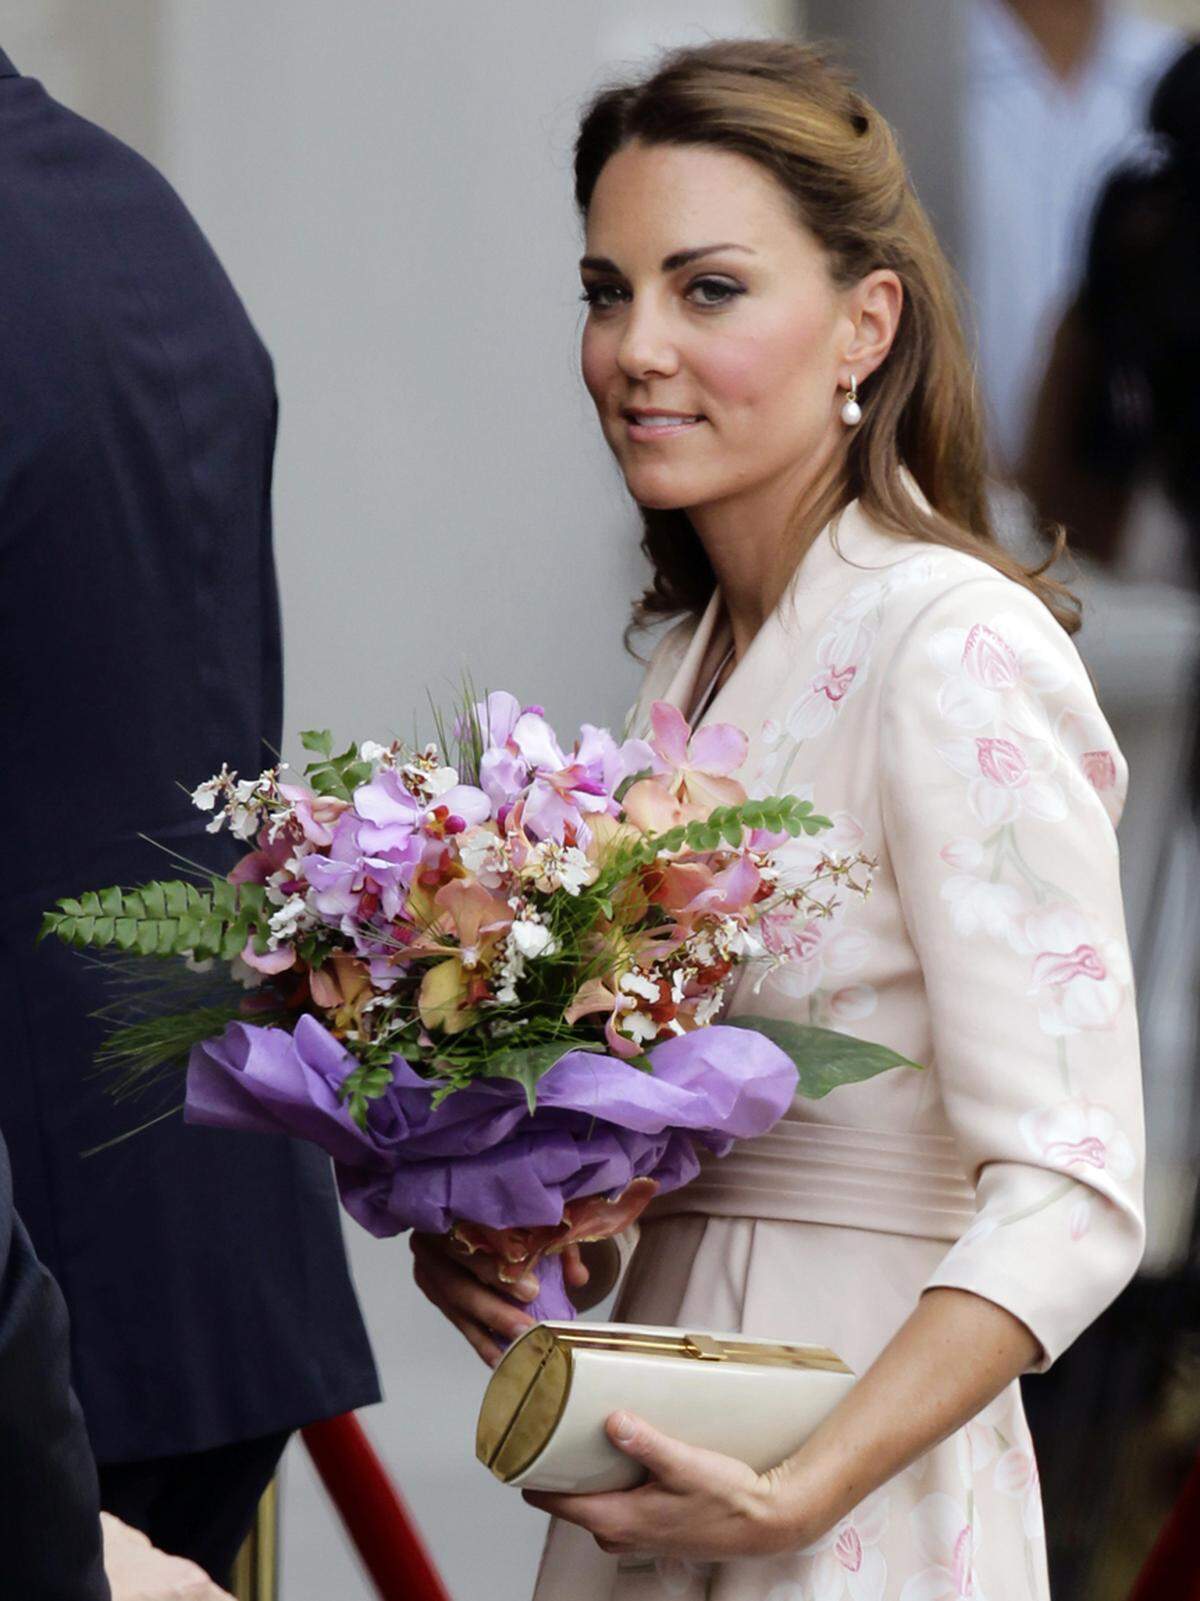 Indiz für die Spekulationen: Kate trug keine eng anliegenden Kleider und schützte sich oftmals mit Blumen ...